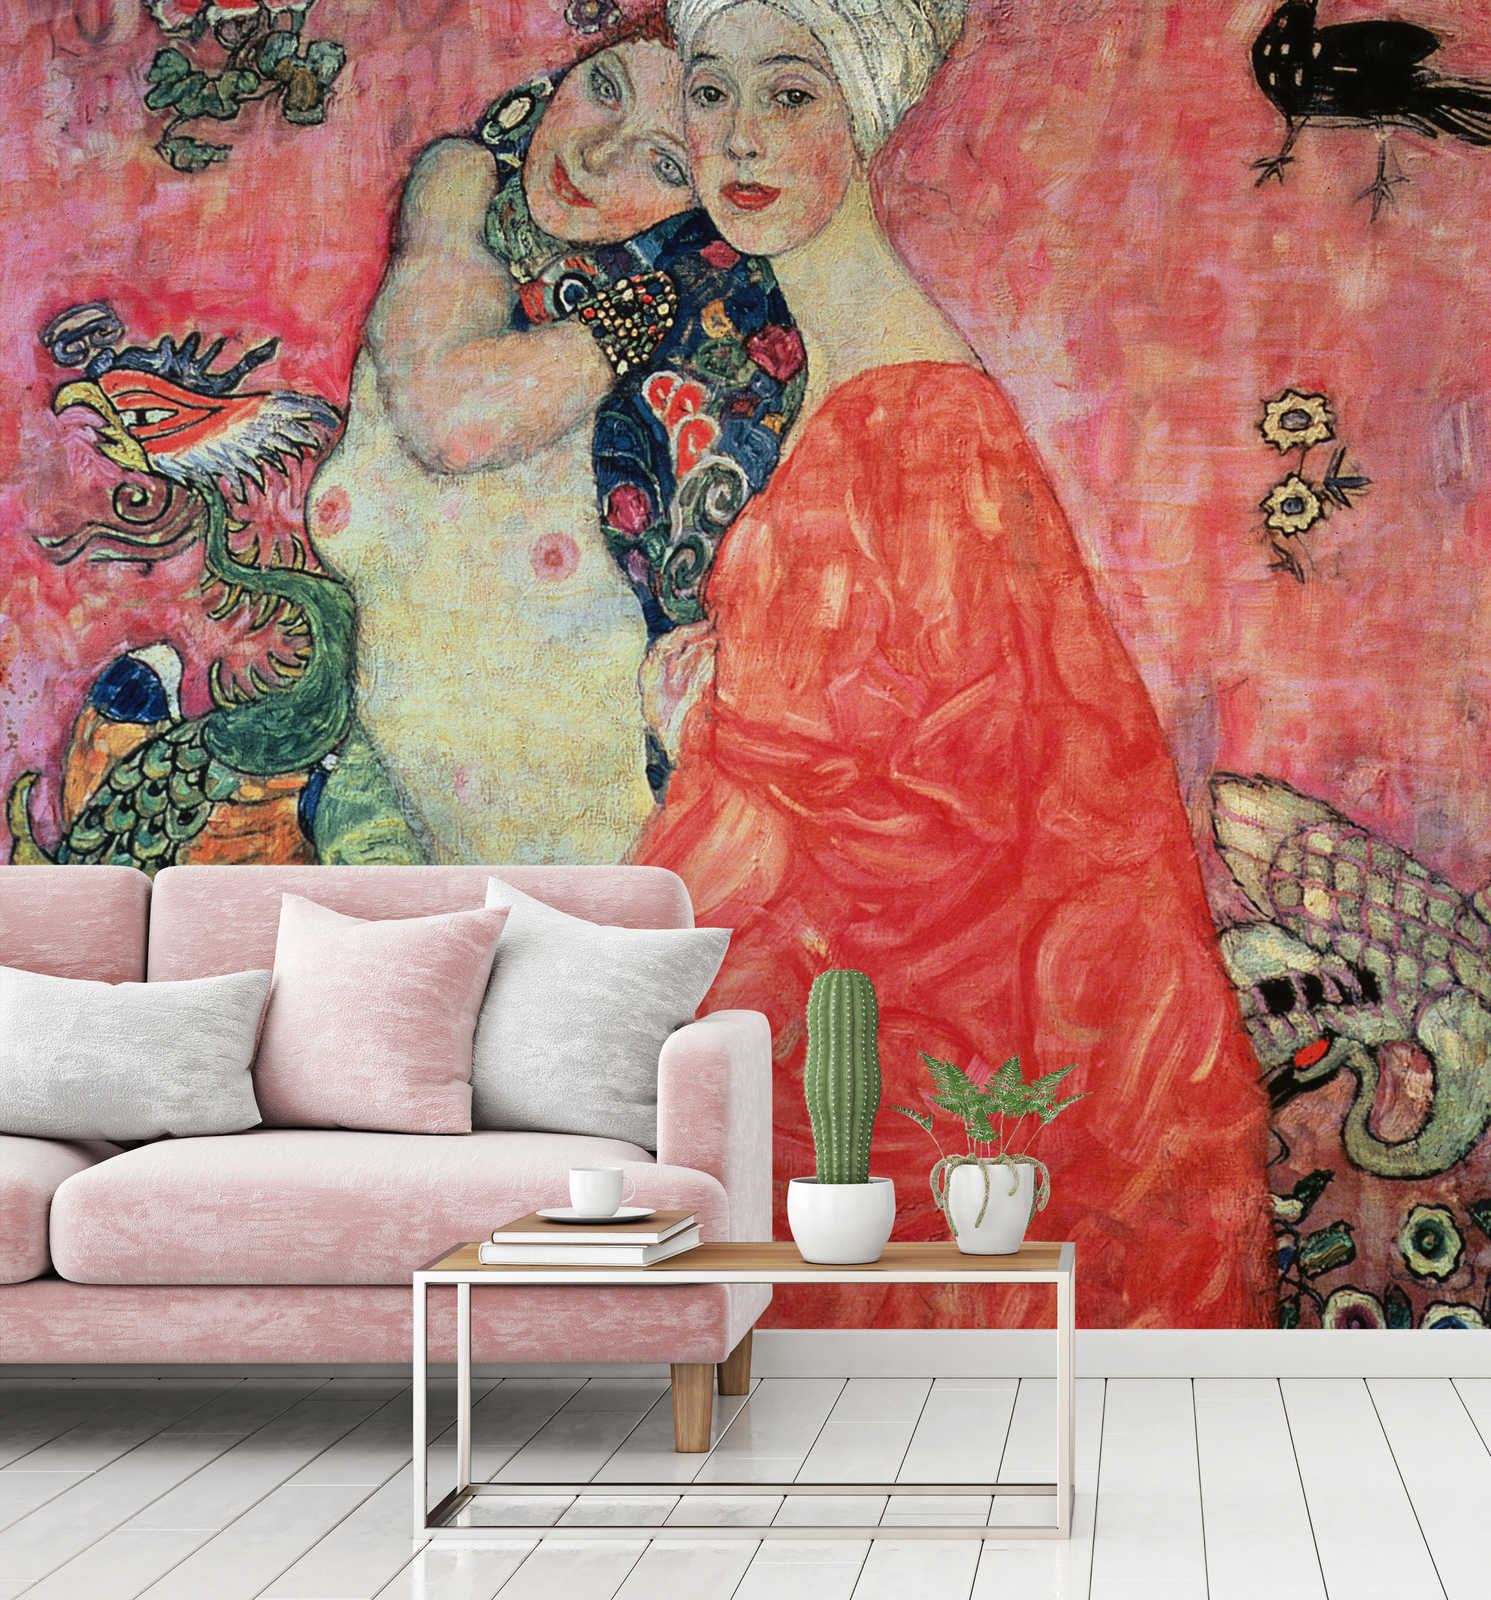             Il murale "Le fidanzate" di Gustav Klimt
        